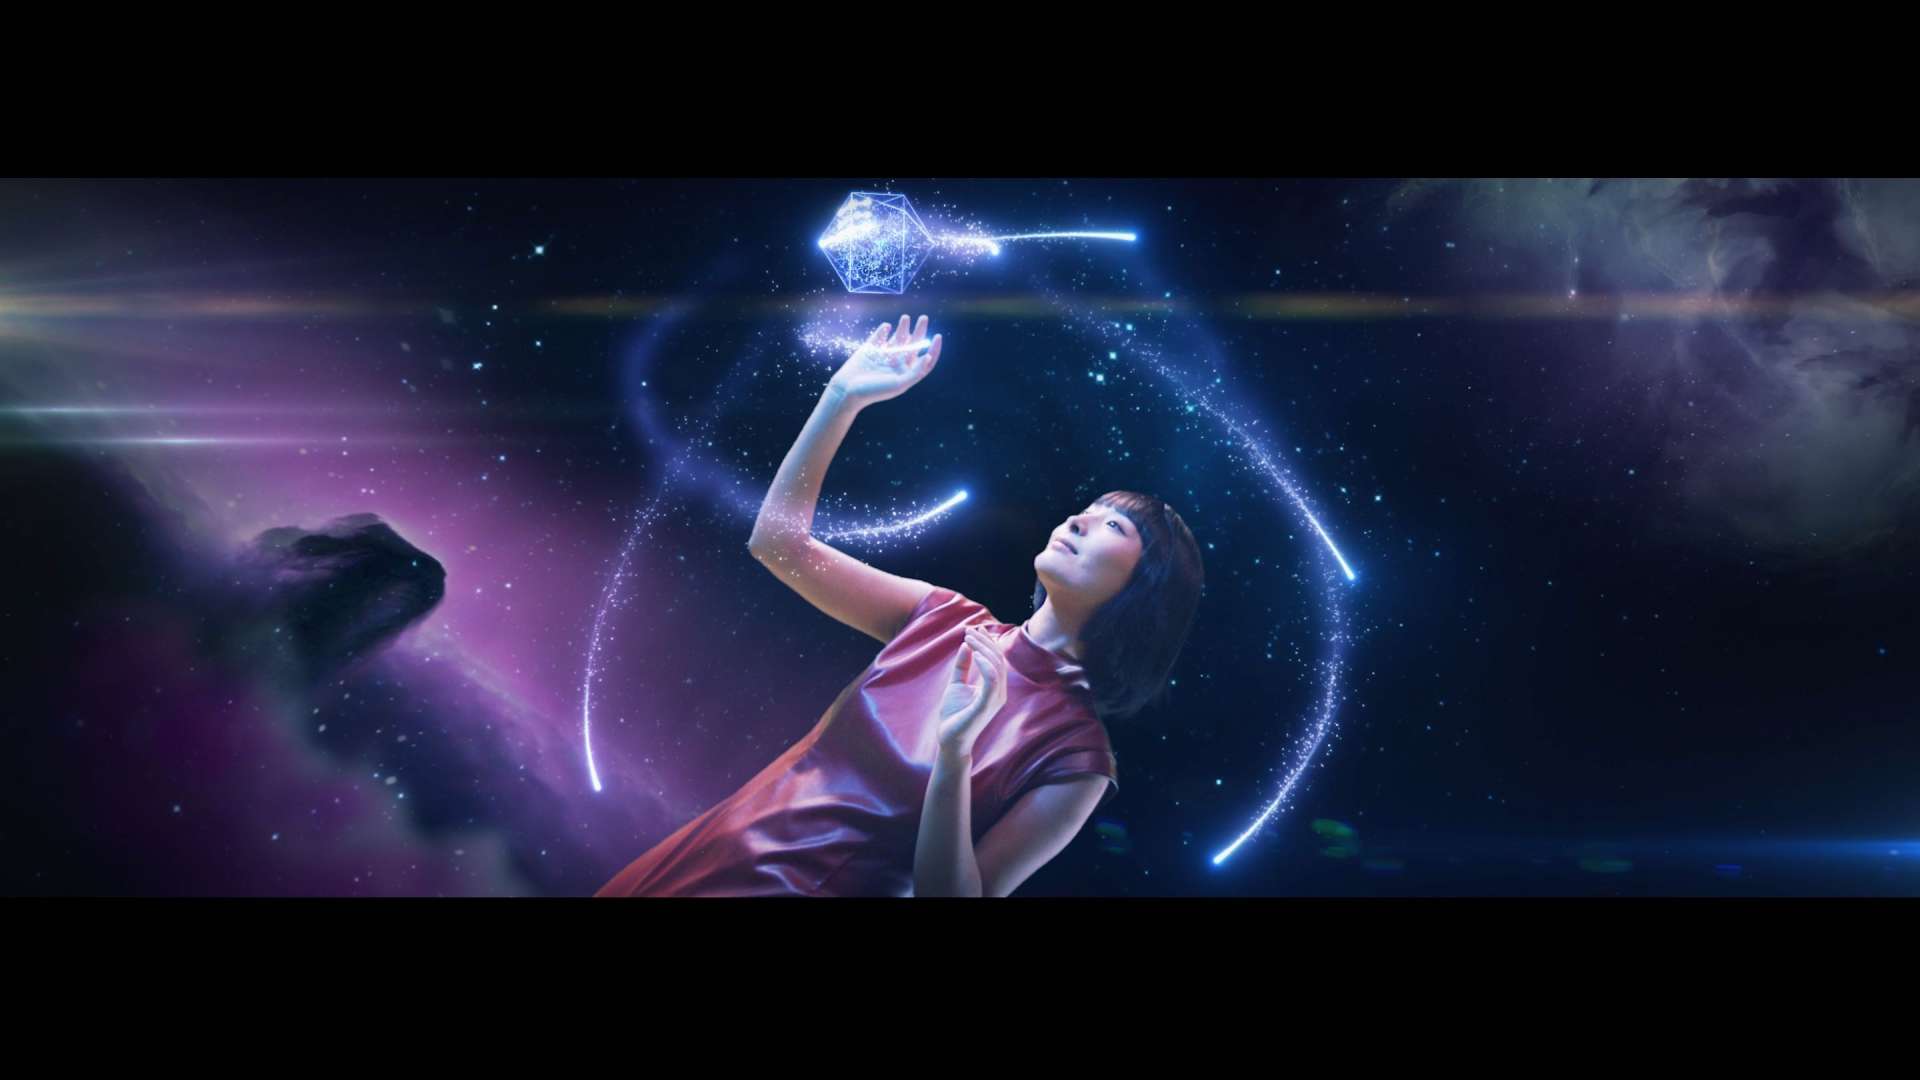 微拍堂元宇宙概念片——河洛 带你触动未来